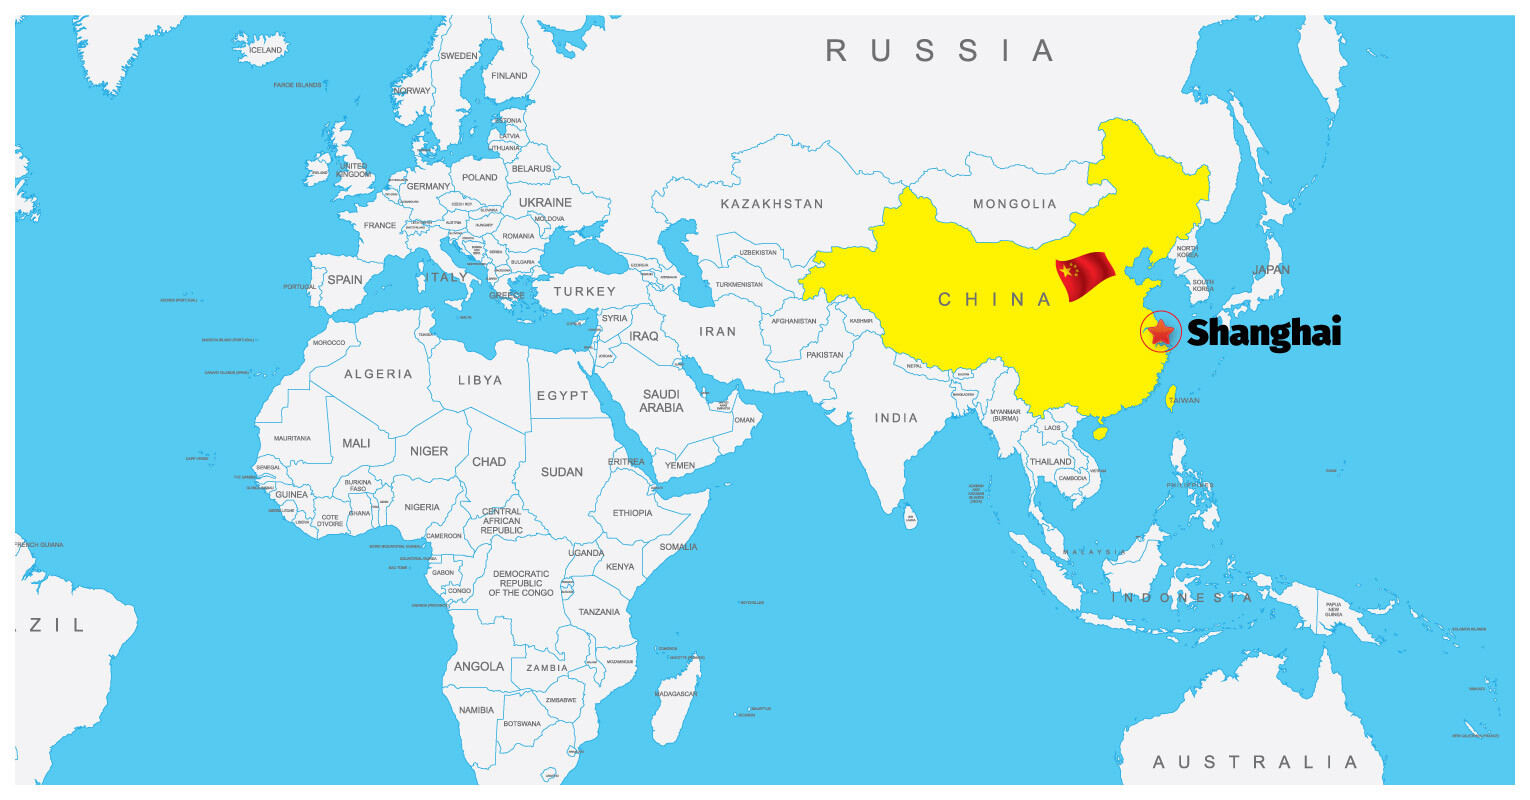 China-(Shanghai)-02 Map